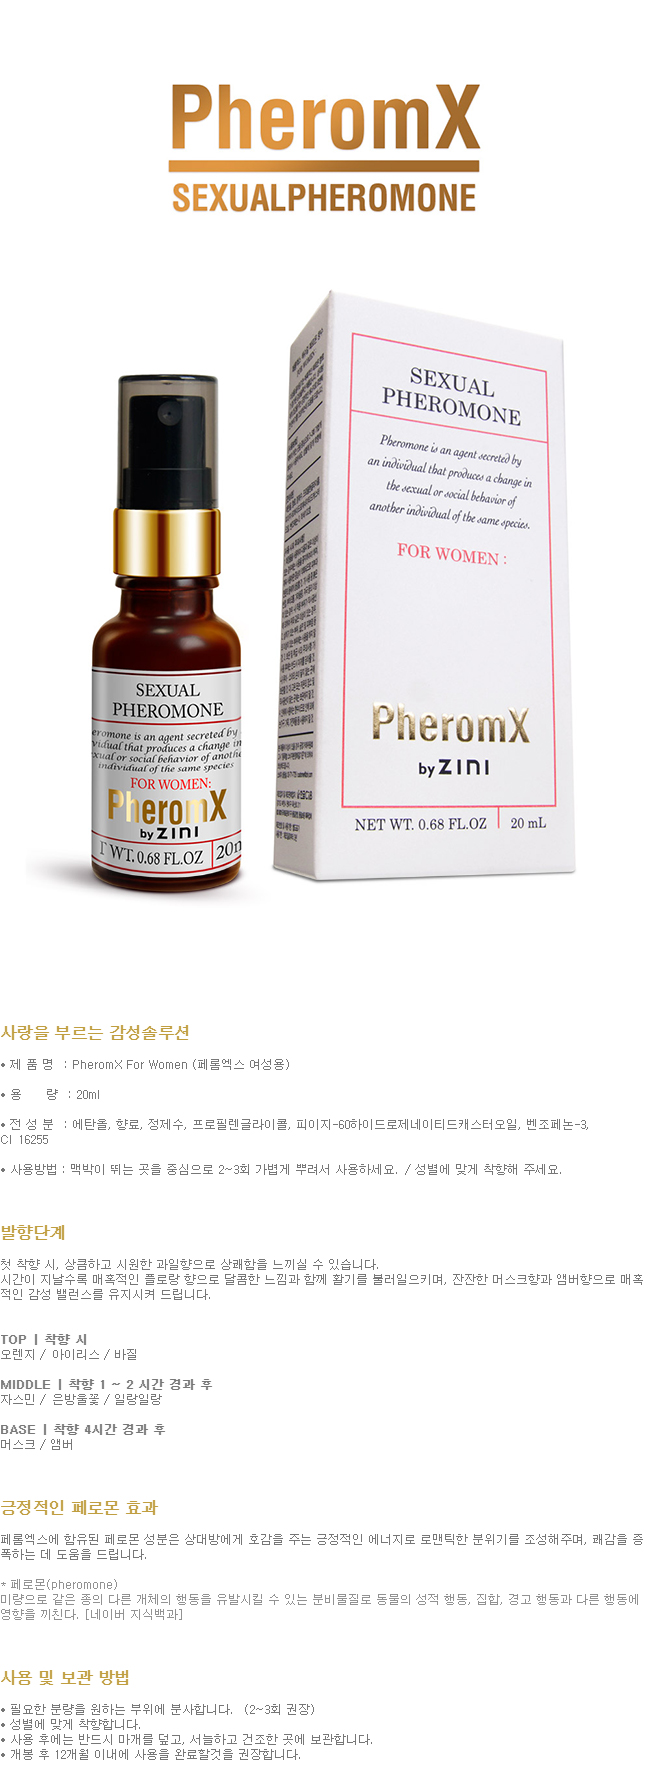 [남성 유혹] 페롬엑스 여성용 (PheromX for Women) - 페로몬 향수/지니